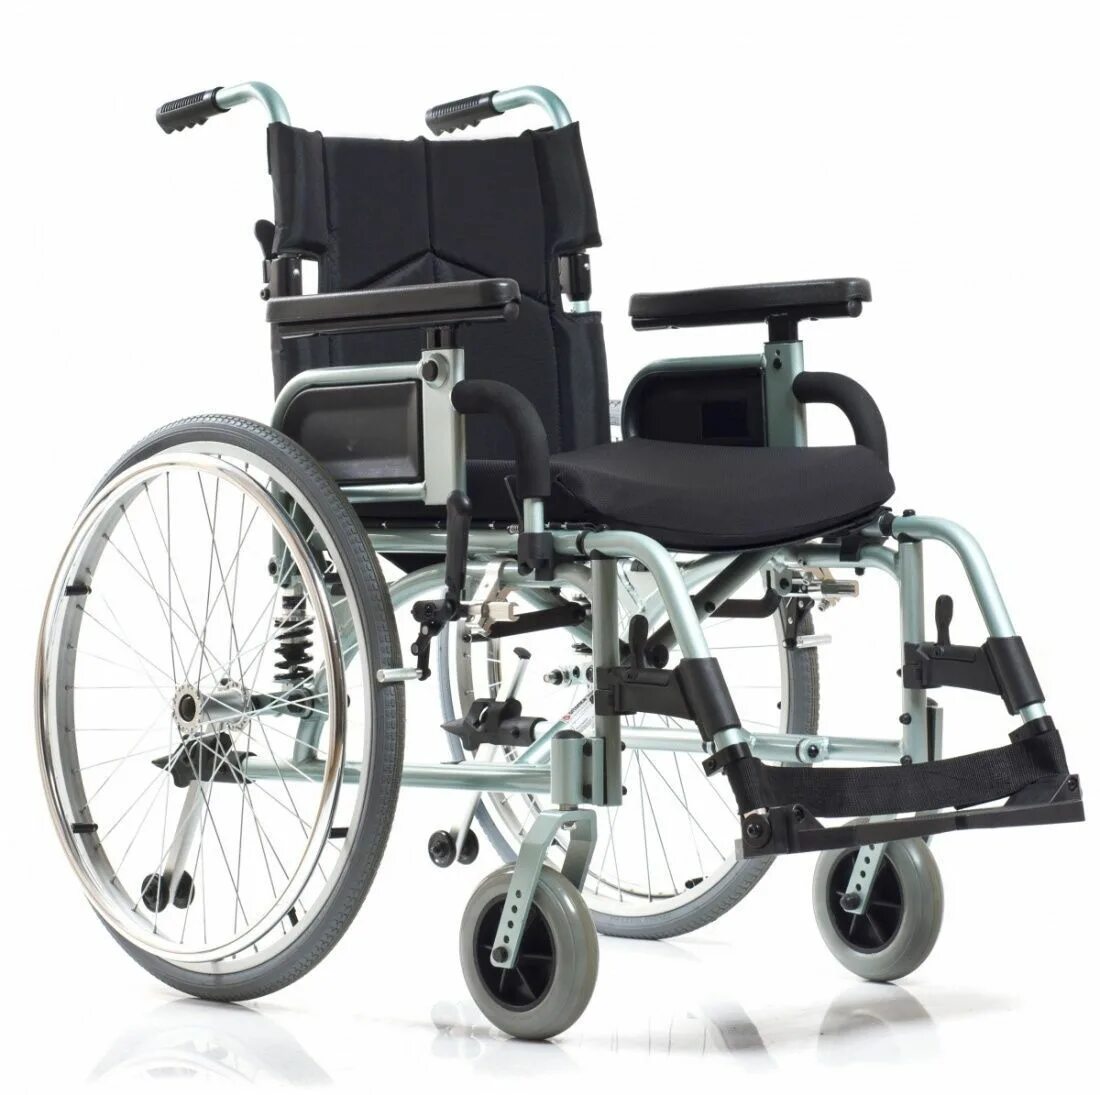 Инвалидная коляска ортоника цена. Коляска инвалидная Ortonica Delux 510. Инвалидная коляска «Ortonica Delux 520”. Ортоника Делюкс 540 коляска инвалидная. Ky954lgc коляска инвалидная.